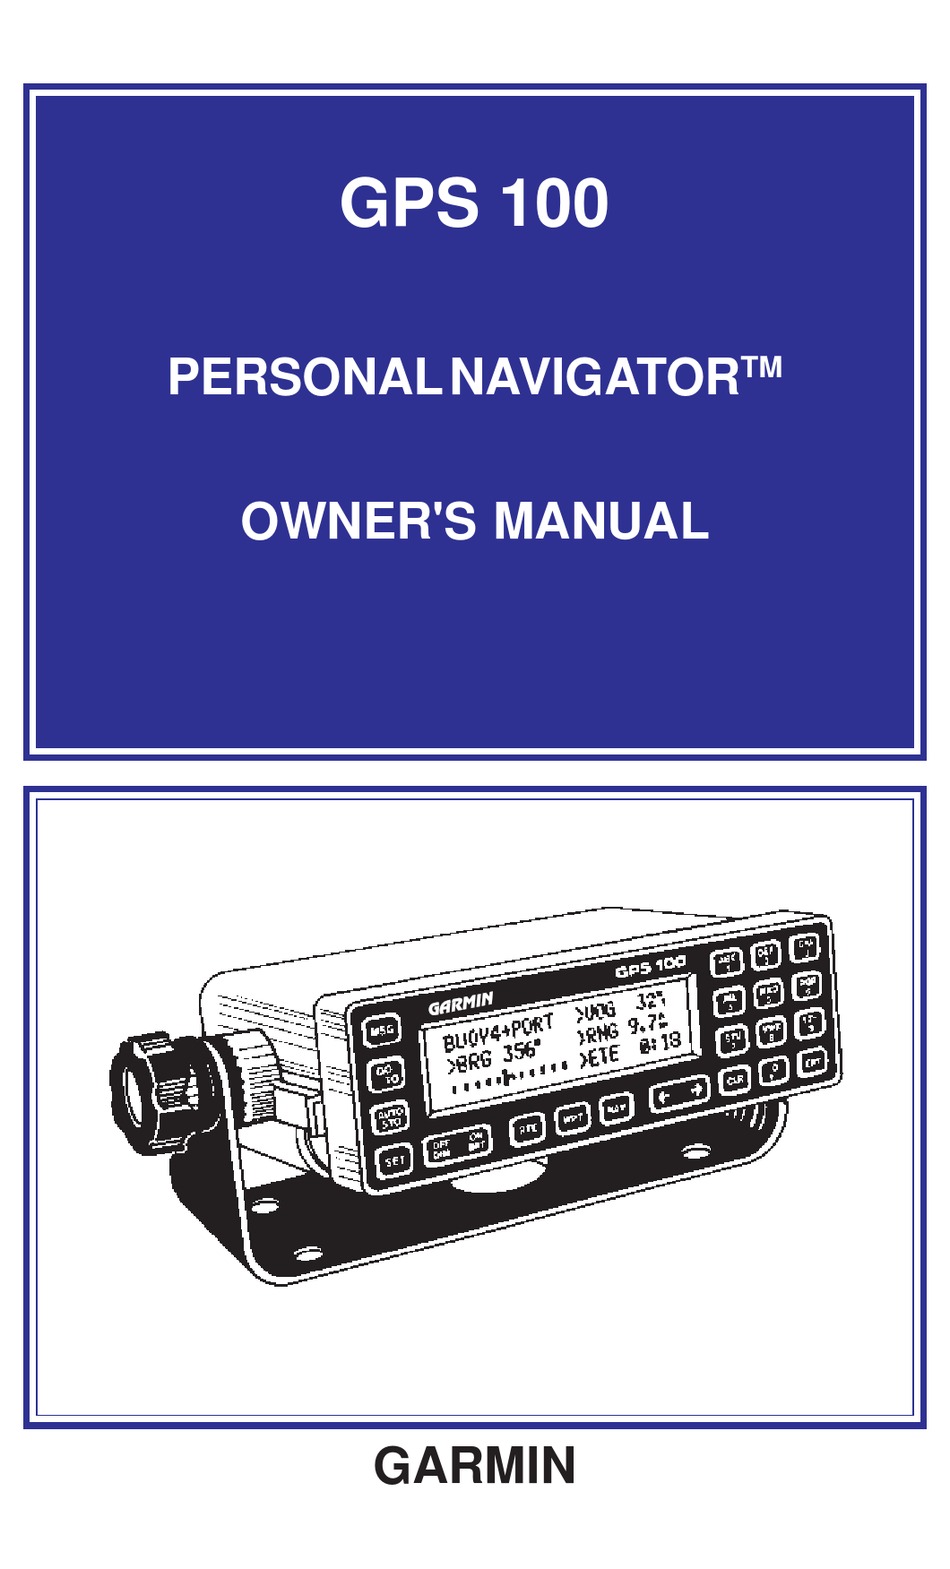 defile Udvikle Kinematik GARMIN GPS 100 OWNER'S MANUAL Pdf Download | ManualsLib